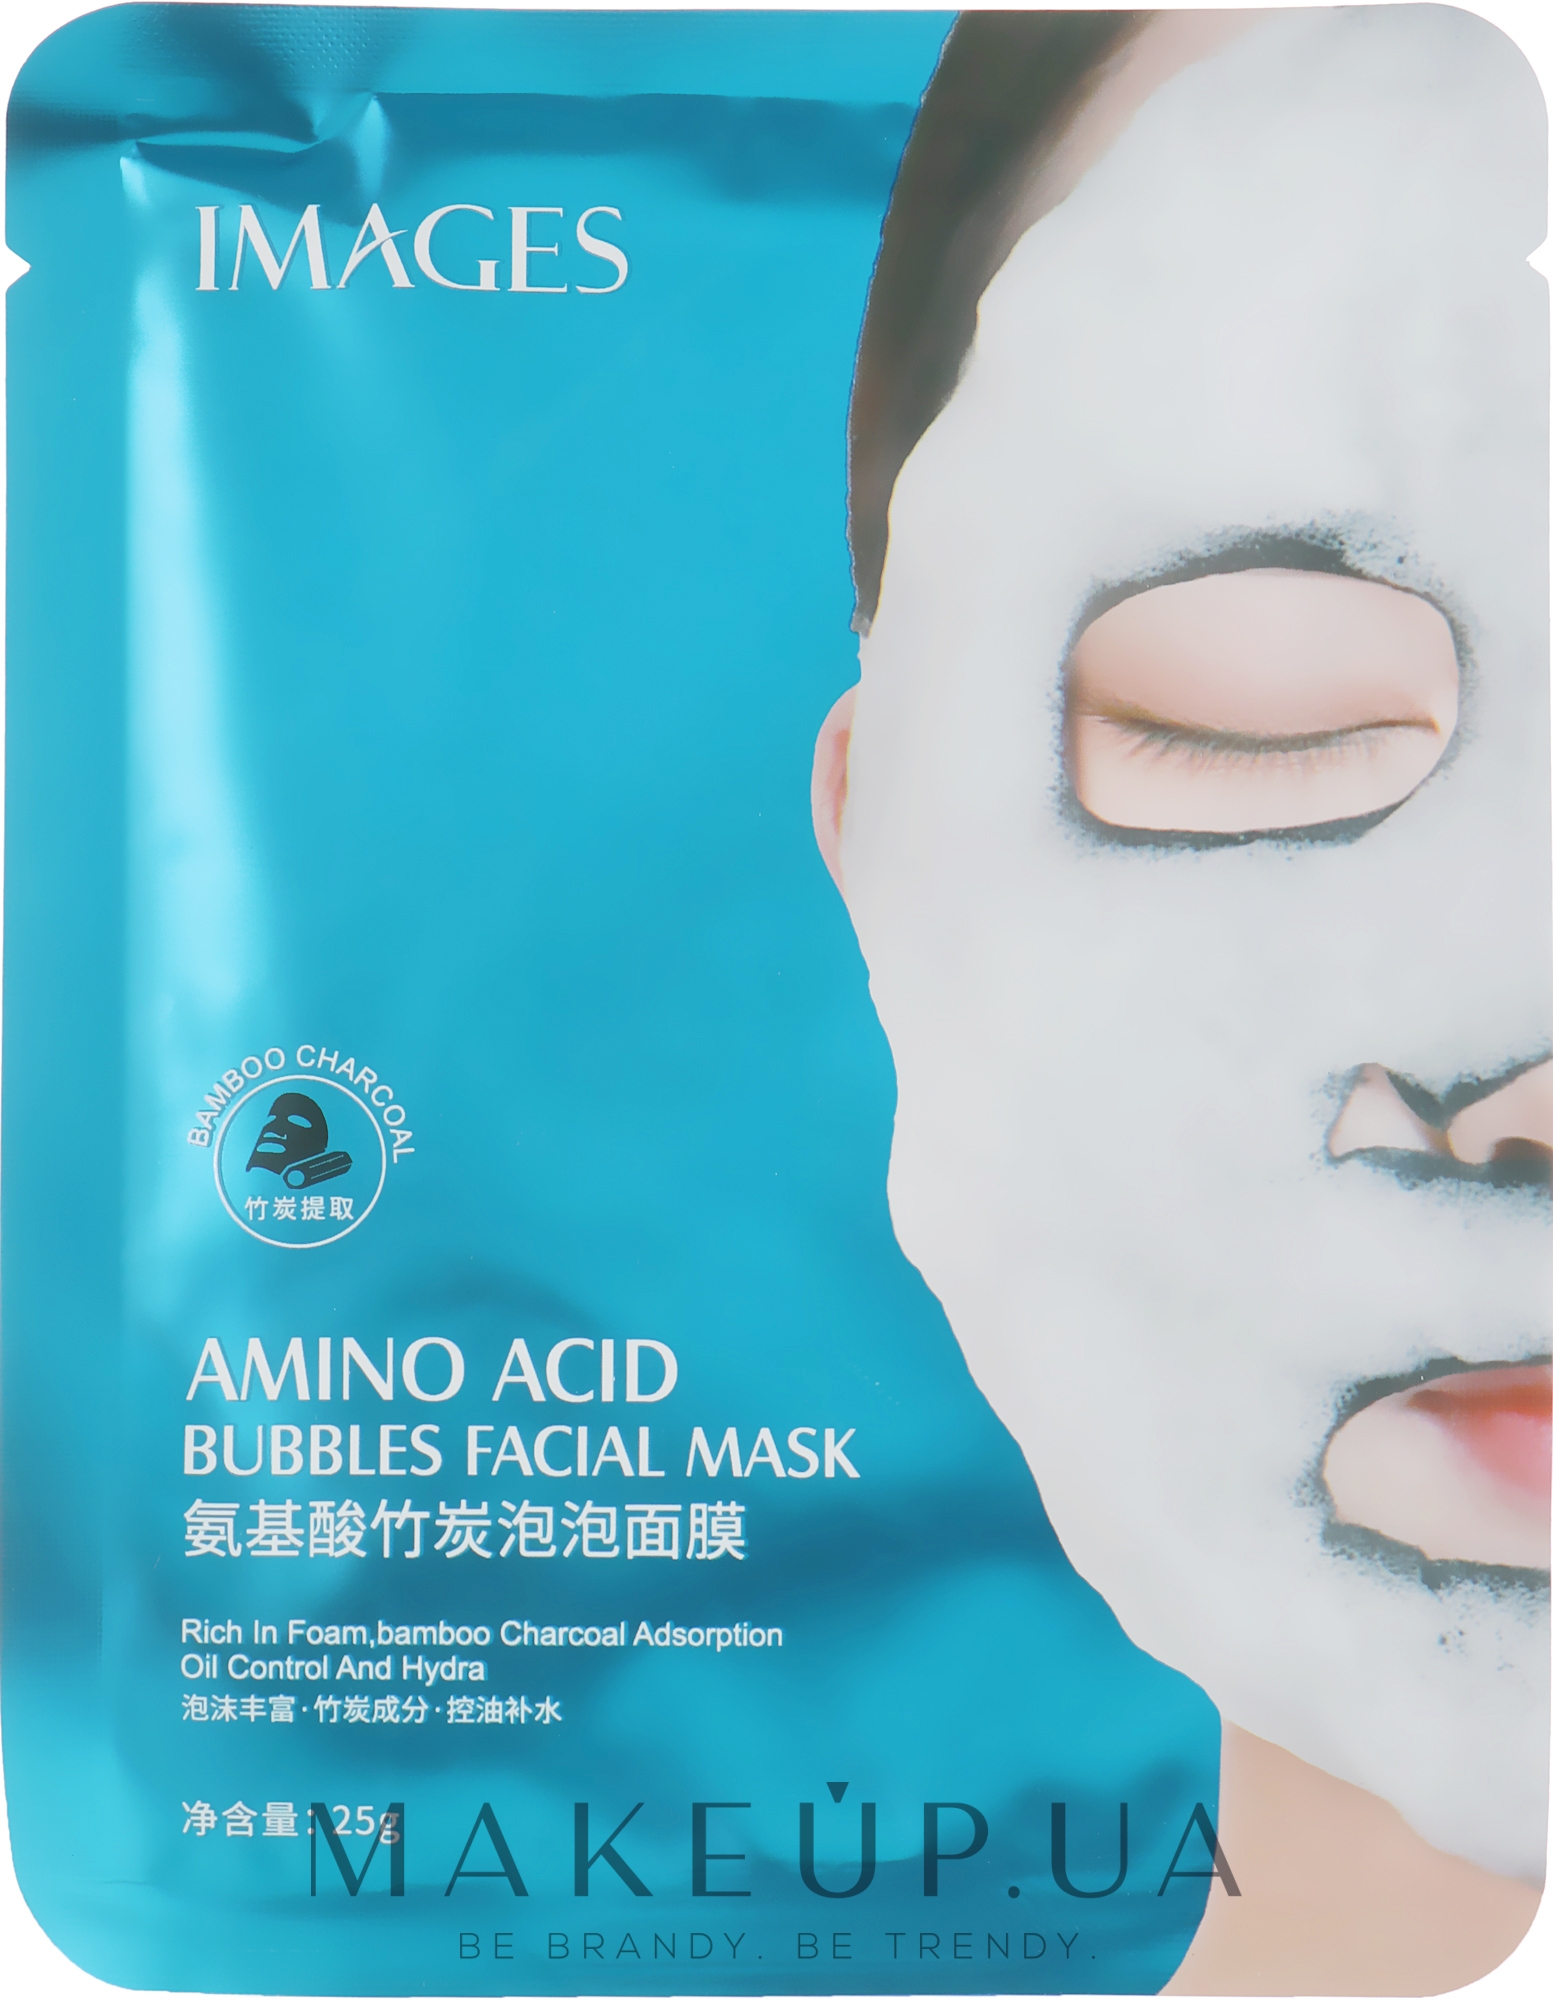 Очищающая тканевая кислородная маска для лица - Images Bubbles Mask Amino Acid — фото 25g